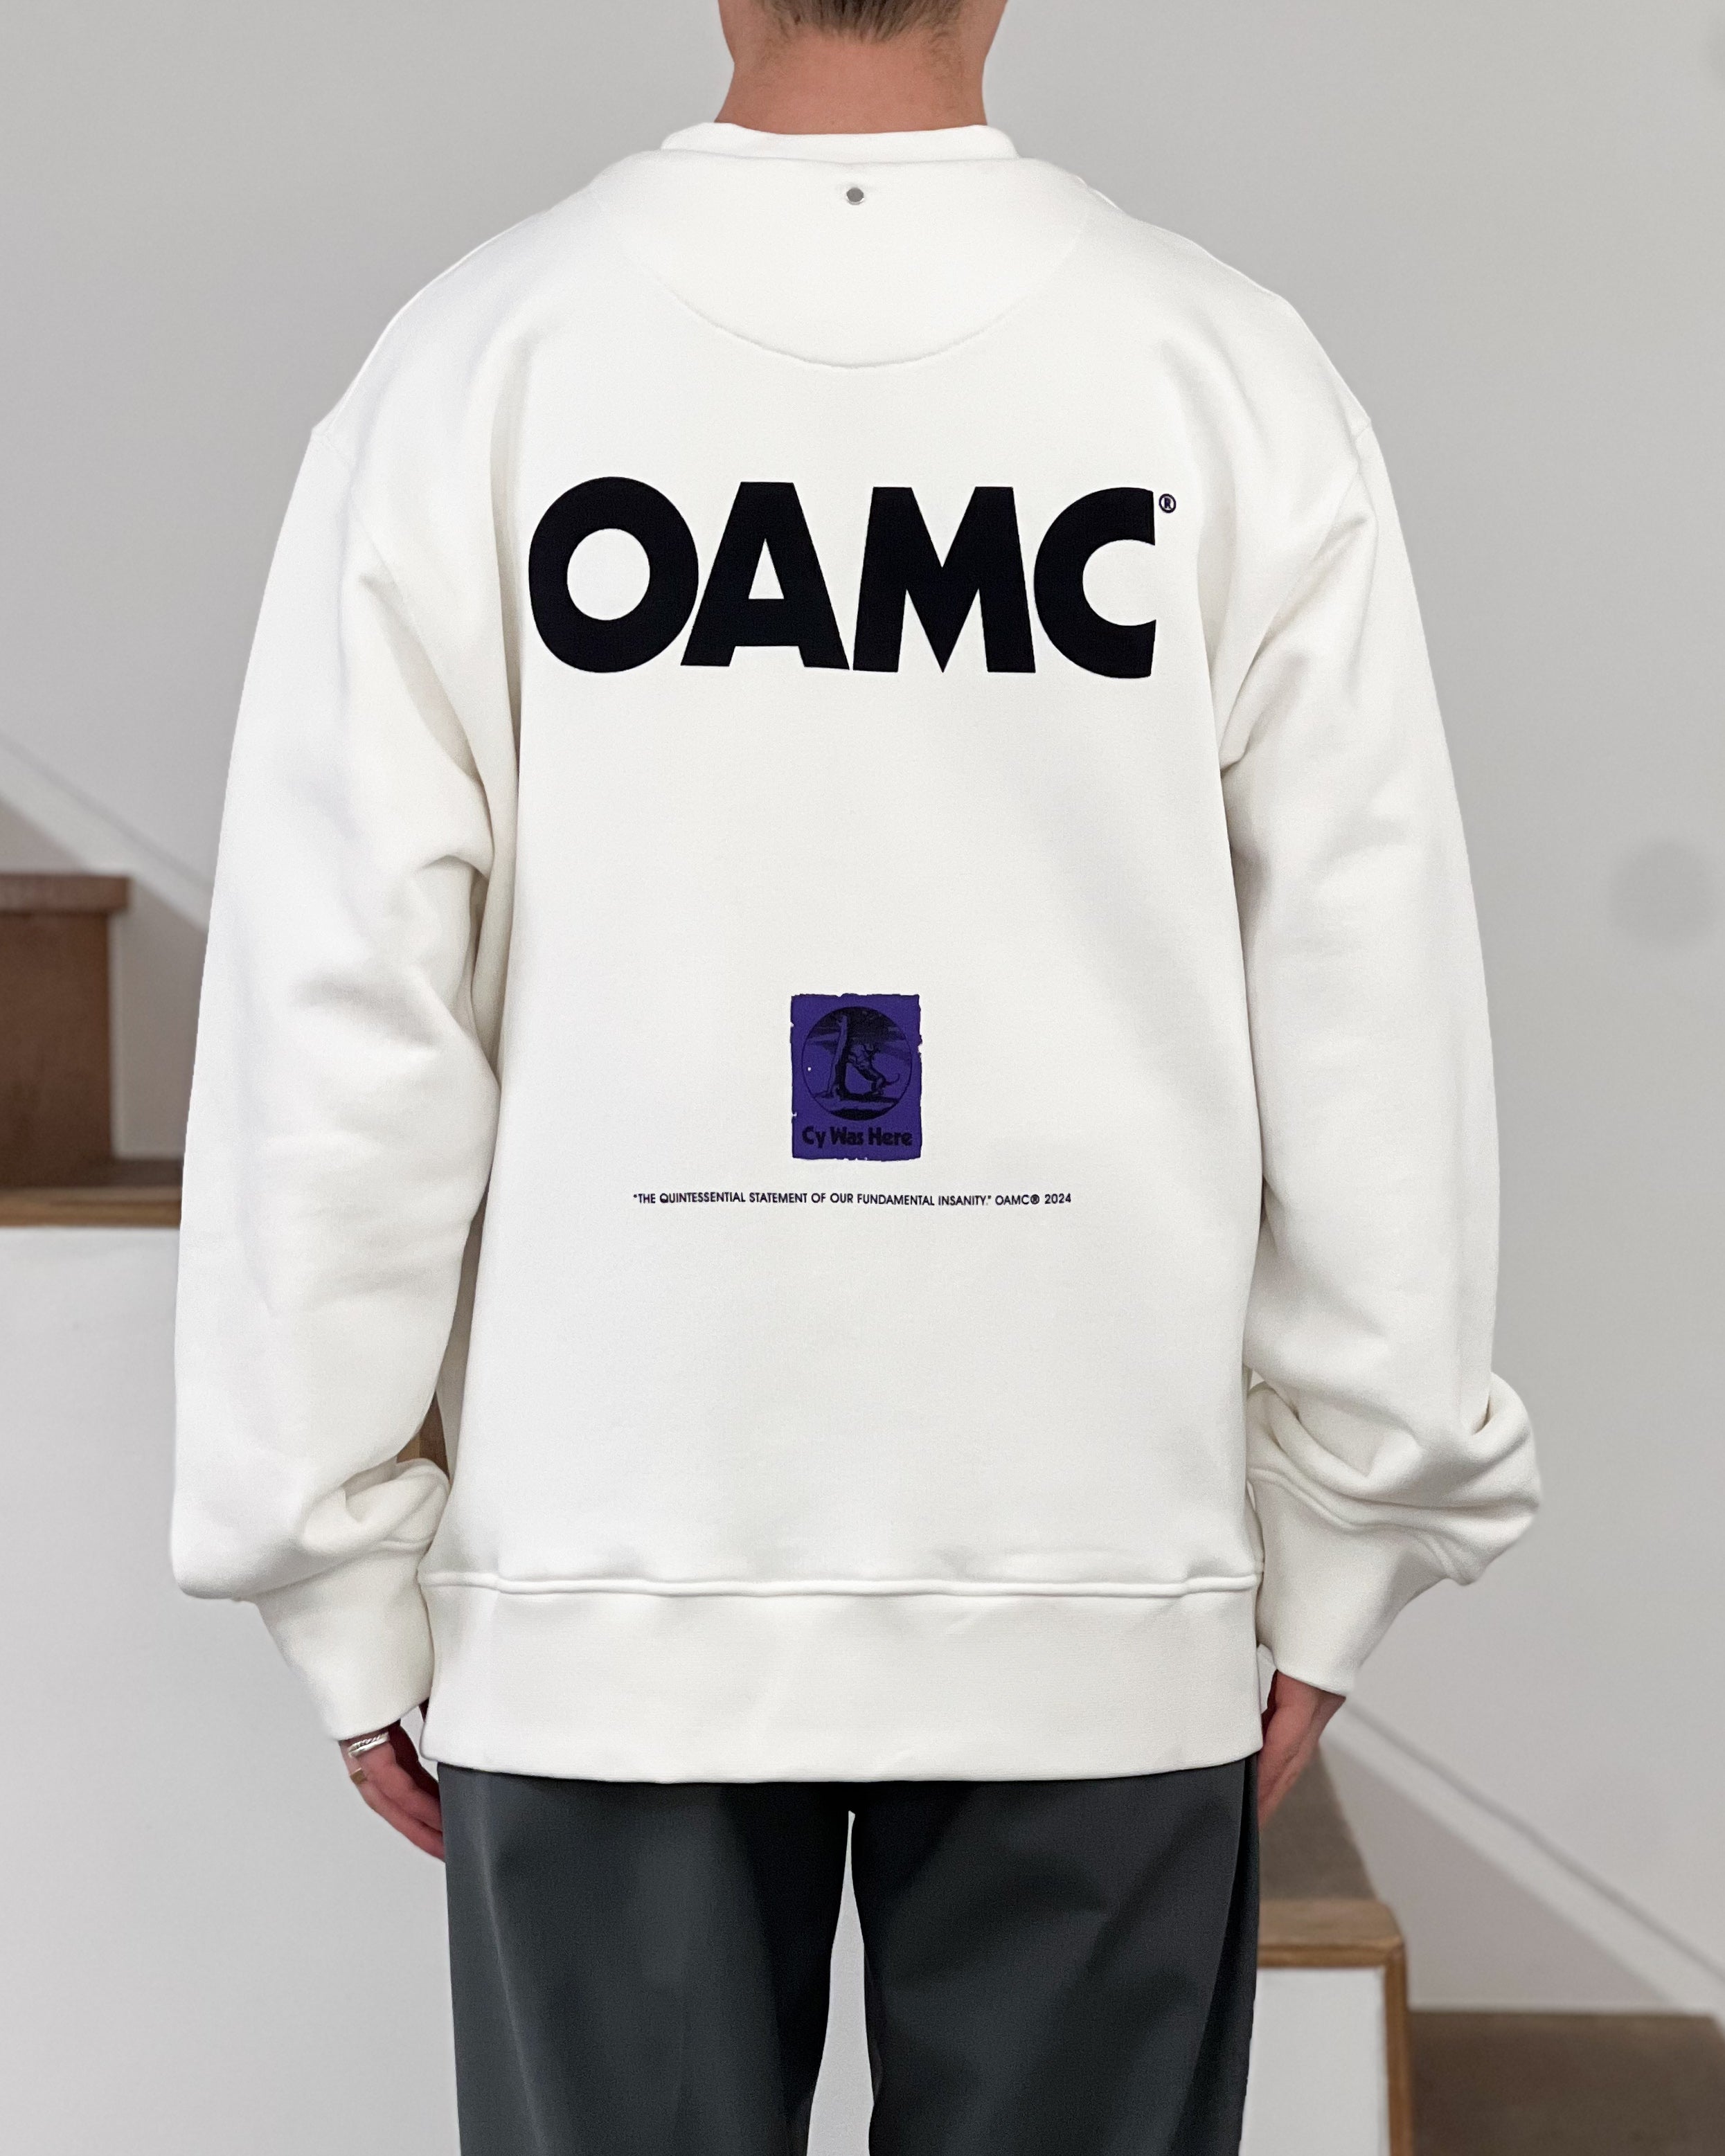 【OAMC】APOLLO CREWNECK -  OFF WHITE